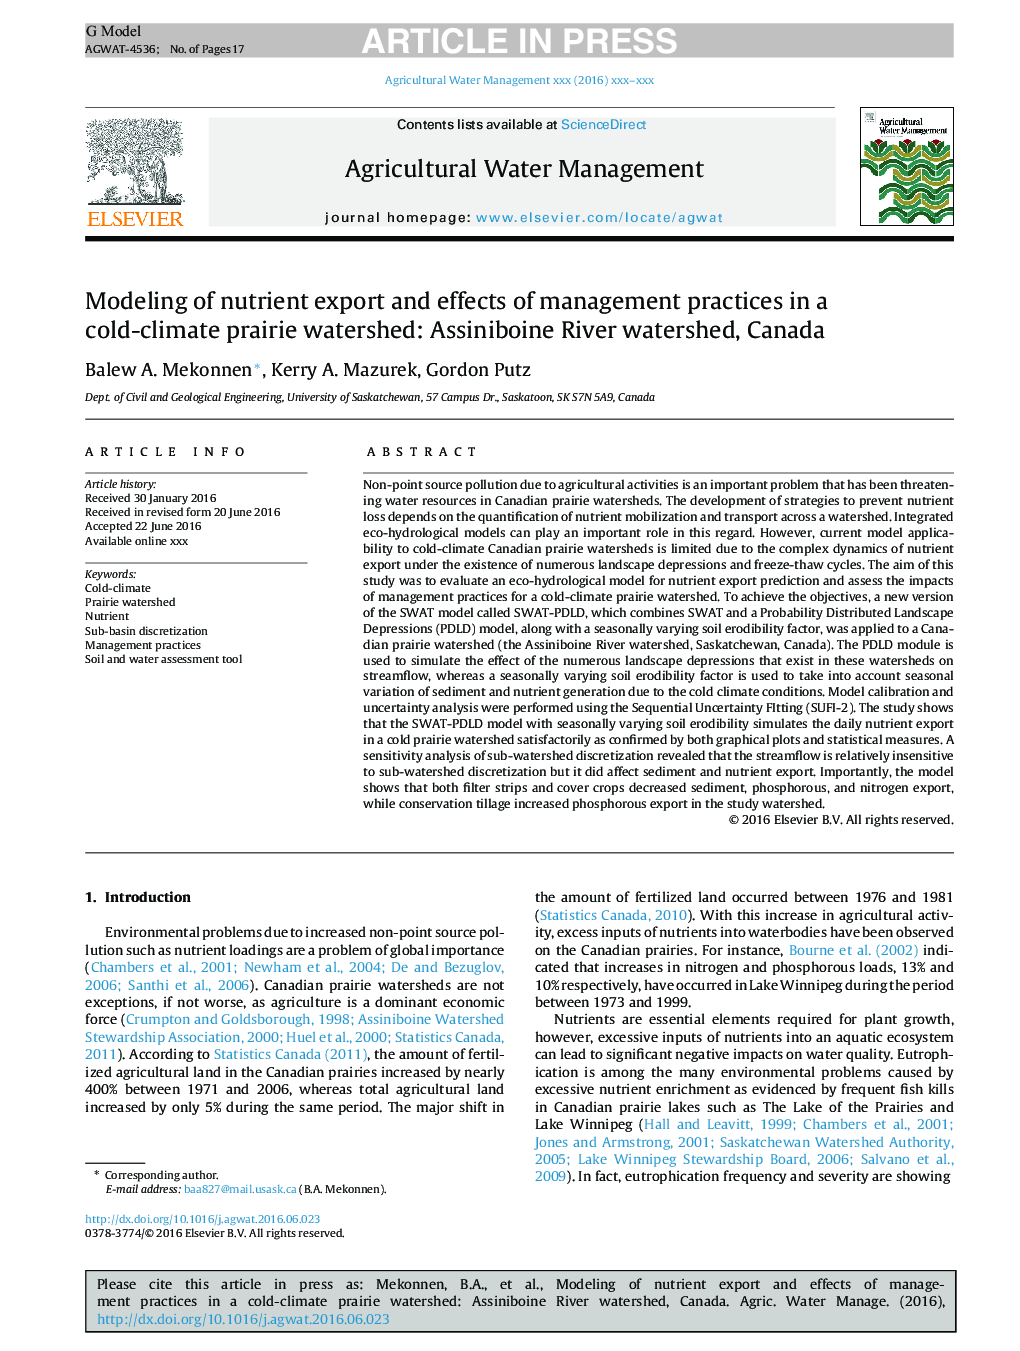 مدل سازی صادرات مواد مغذی و اثرات شیوه های مدیریتی در حوضه آبخیز دریای سرد و آبی: حوضه رود آیسینبوئین، کانادا 